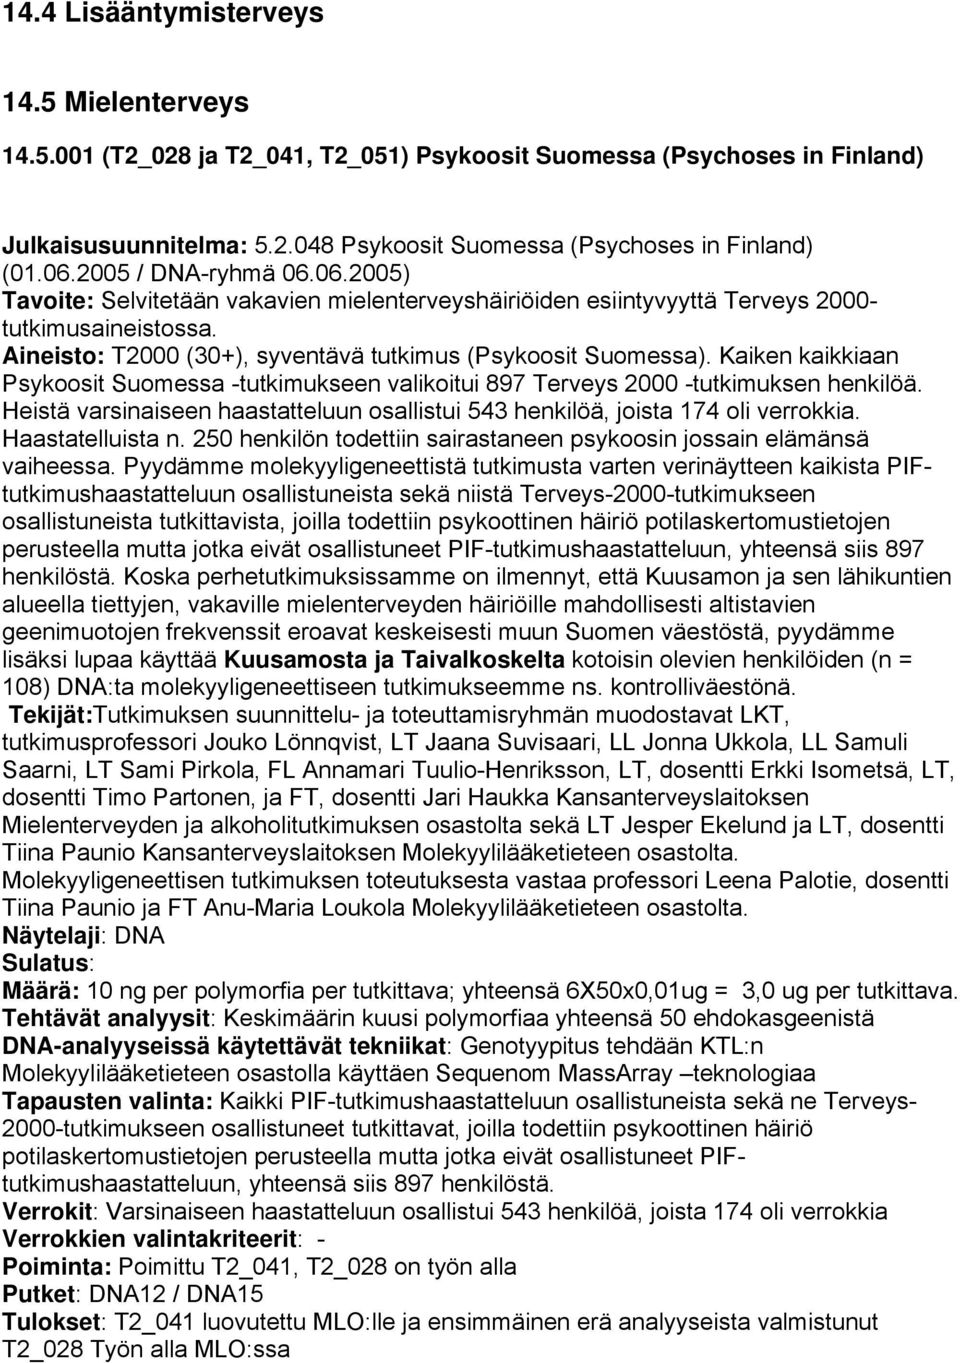 Kaiken kaikkiaan Psykoosit Suomessa -tutkimukseen valikoitui 897 Terveys 2000 -tutkimuksen henkilöä. Heistä varsinaiseen haastatteluun osallistui 543 henkilöä, joista 174 oli verrokkia.